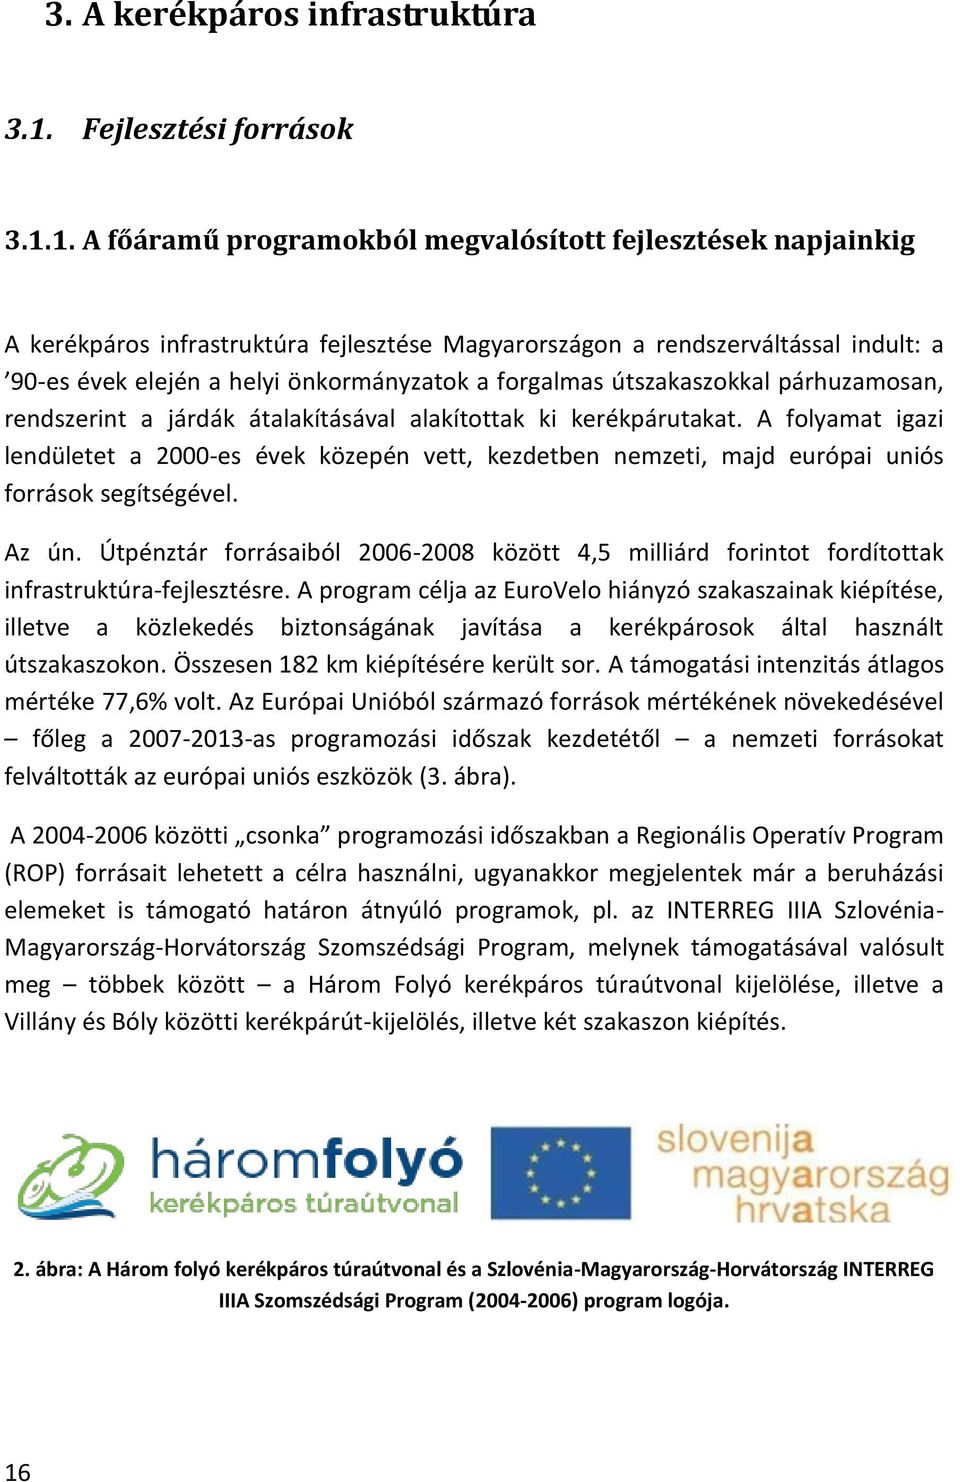 1. A főáramű programokból megvalósított fejlesztések napjainkig A kerékpáros infrastruktúra fejlesztése Magyarországon a rendszerváltással indult: a 90-es évek elején a helyi önkormányzatok a